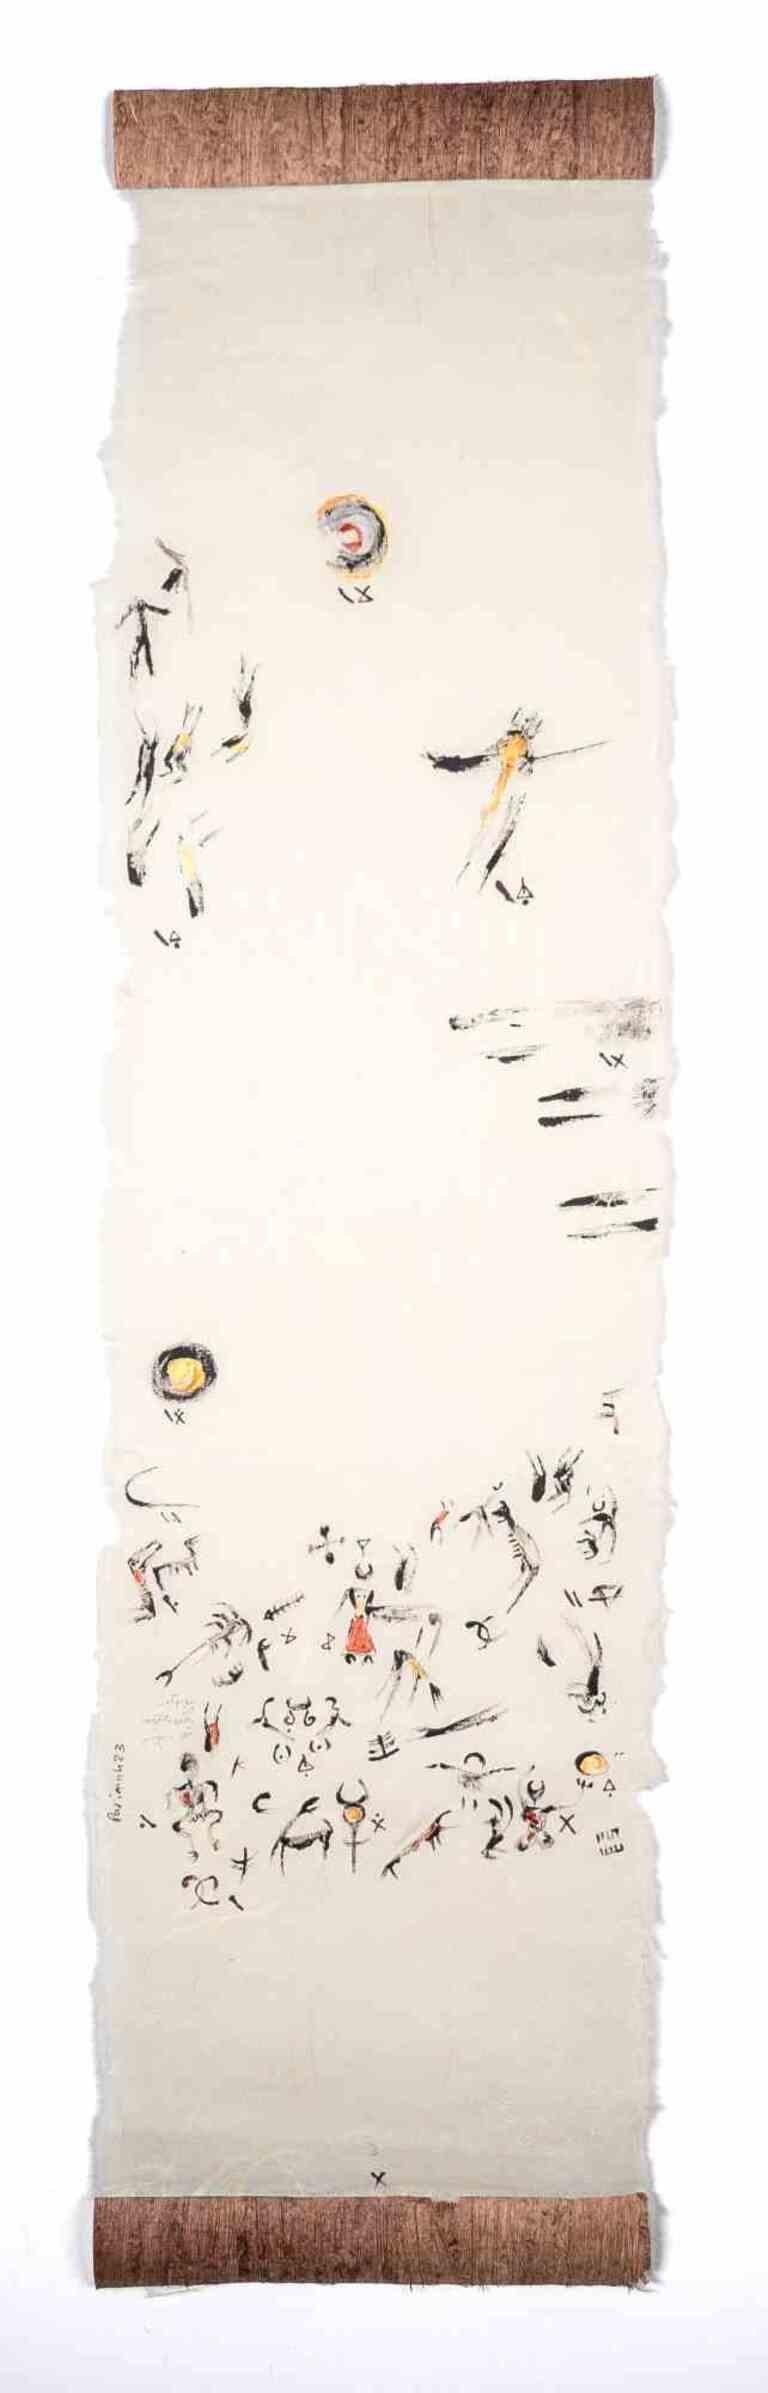 Messenger of the Afterlife ist eine Zeichnung der iranischen Künstlerin und Dichterin Parimah Avani aus dem Jahr 2023.

China-Tusche, Acryl auf japanischem Washi Haruki-Papier mit aufgetragenem Papyrus, Plettenberg, DE.

Ausgestellt in "Heroine's